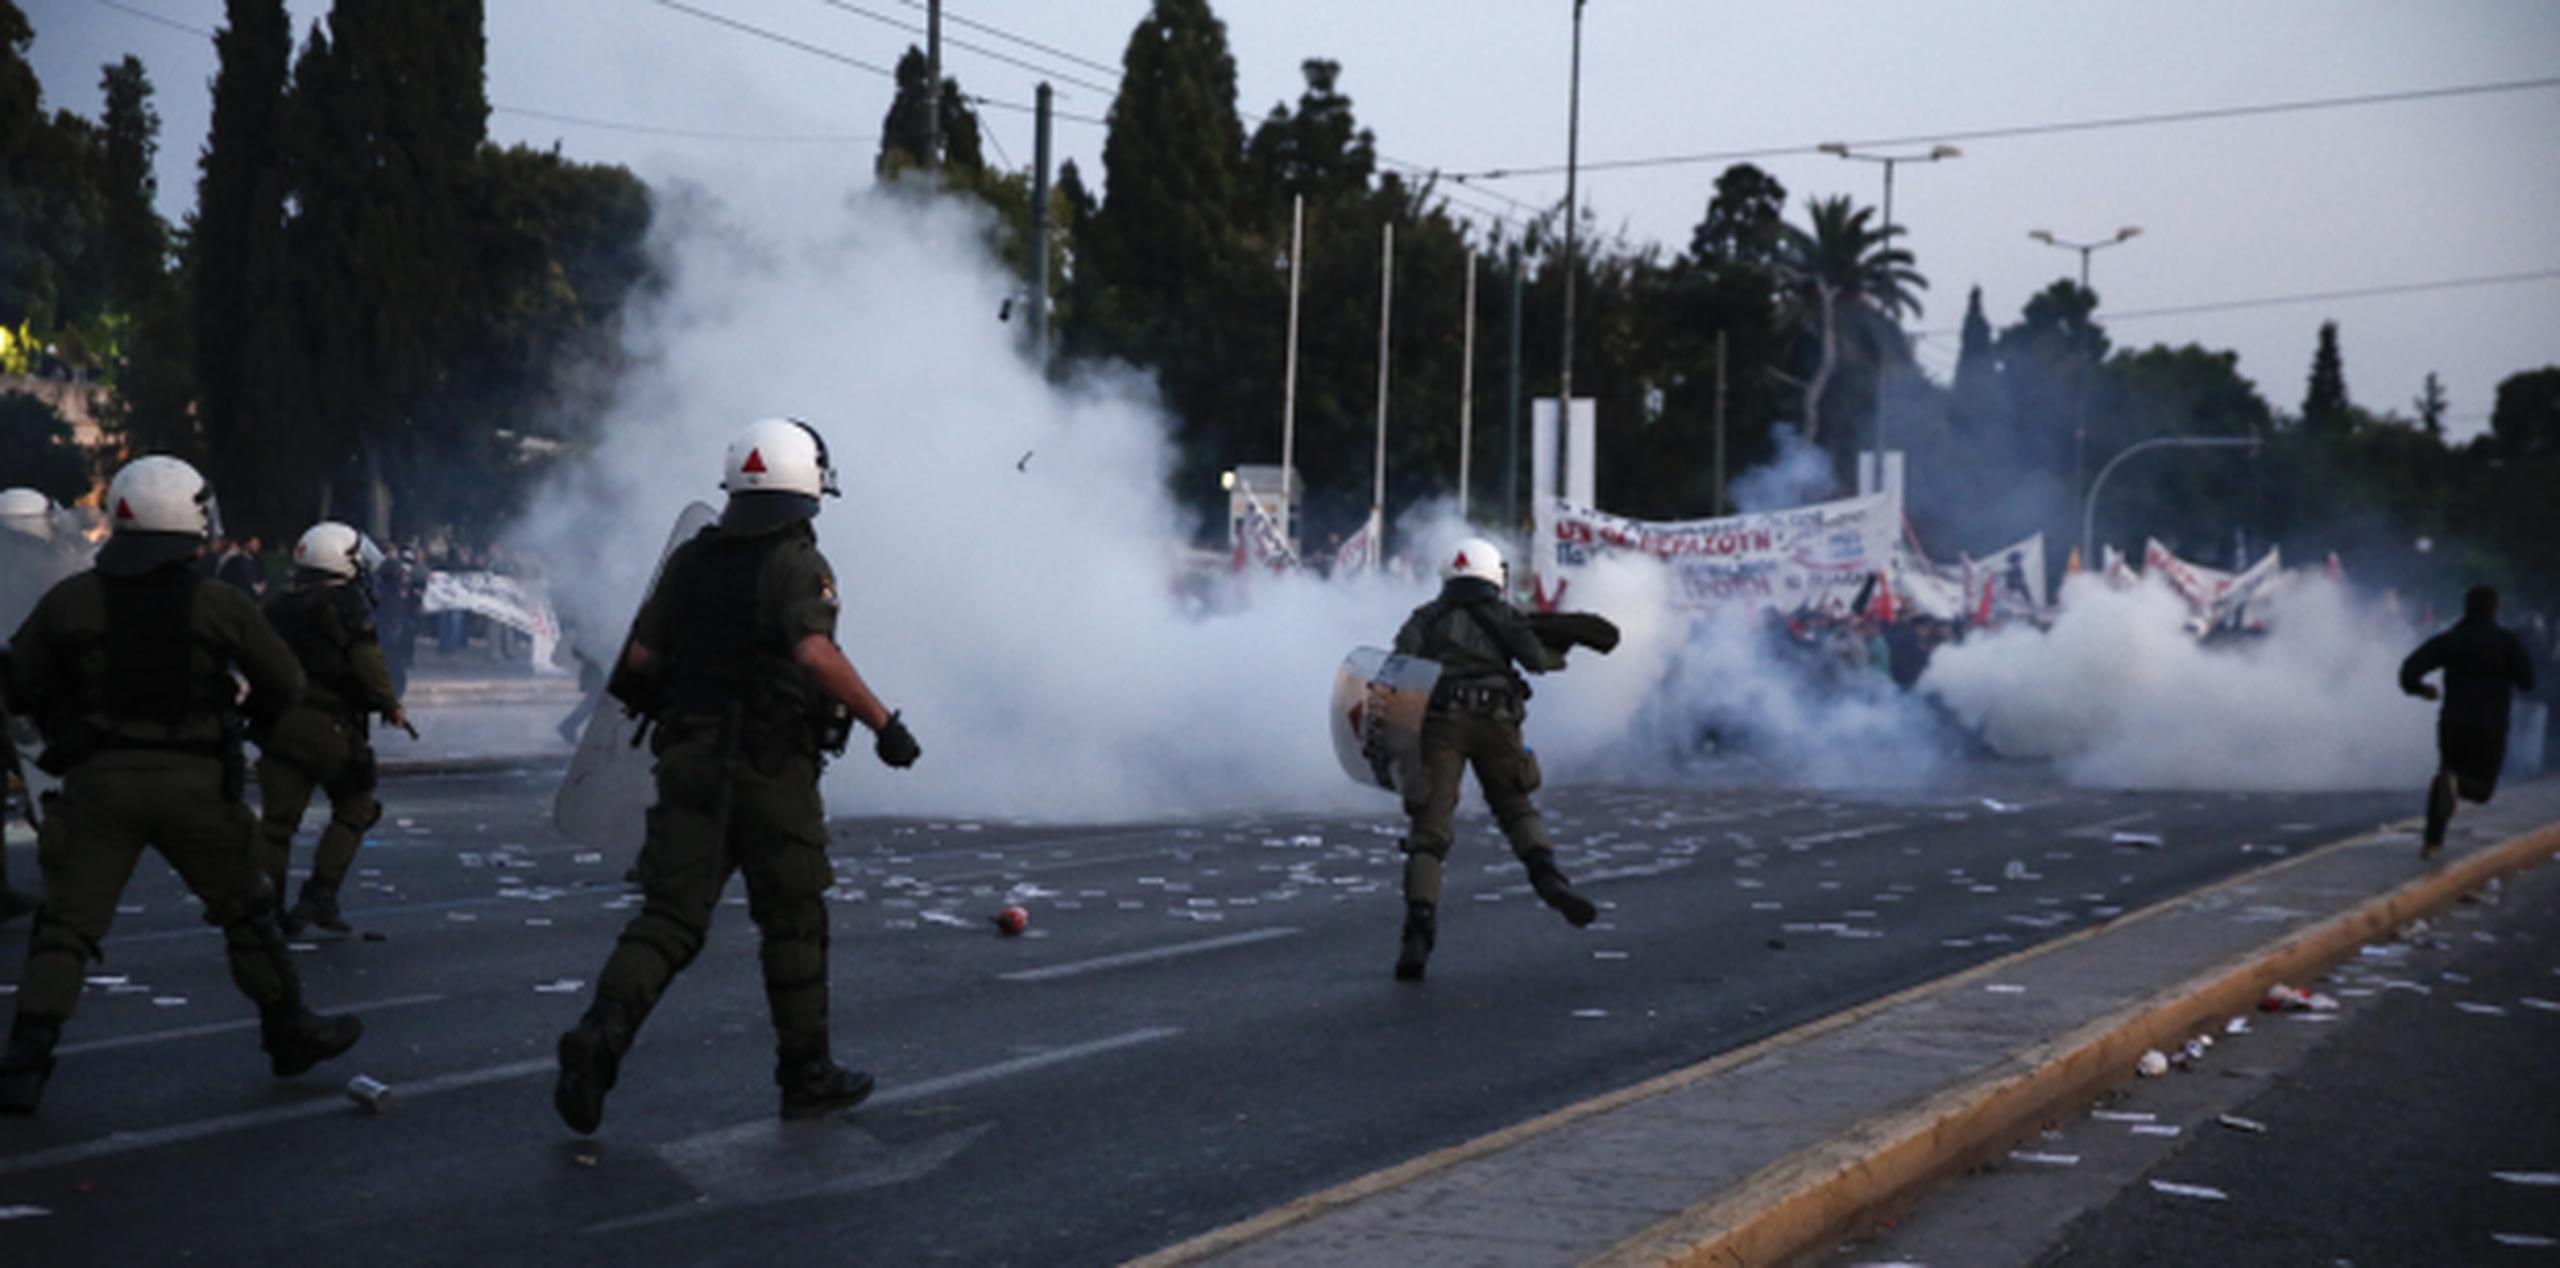 La policía griega lanzó gases lacrimógenos para dispesar a los manifestantes que protestaban contra un controversial proyecto de austeridad que debatía el Parlamento.(AP/Yorgos Karahalis)
